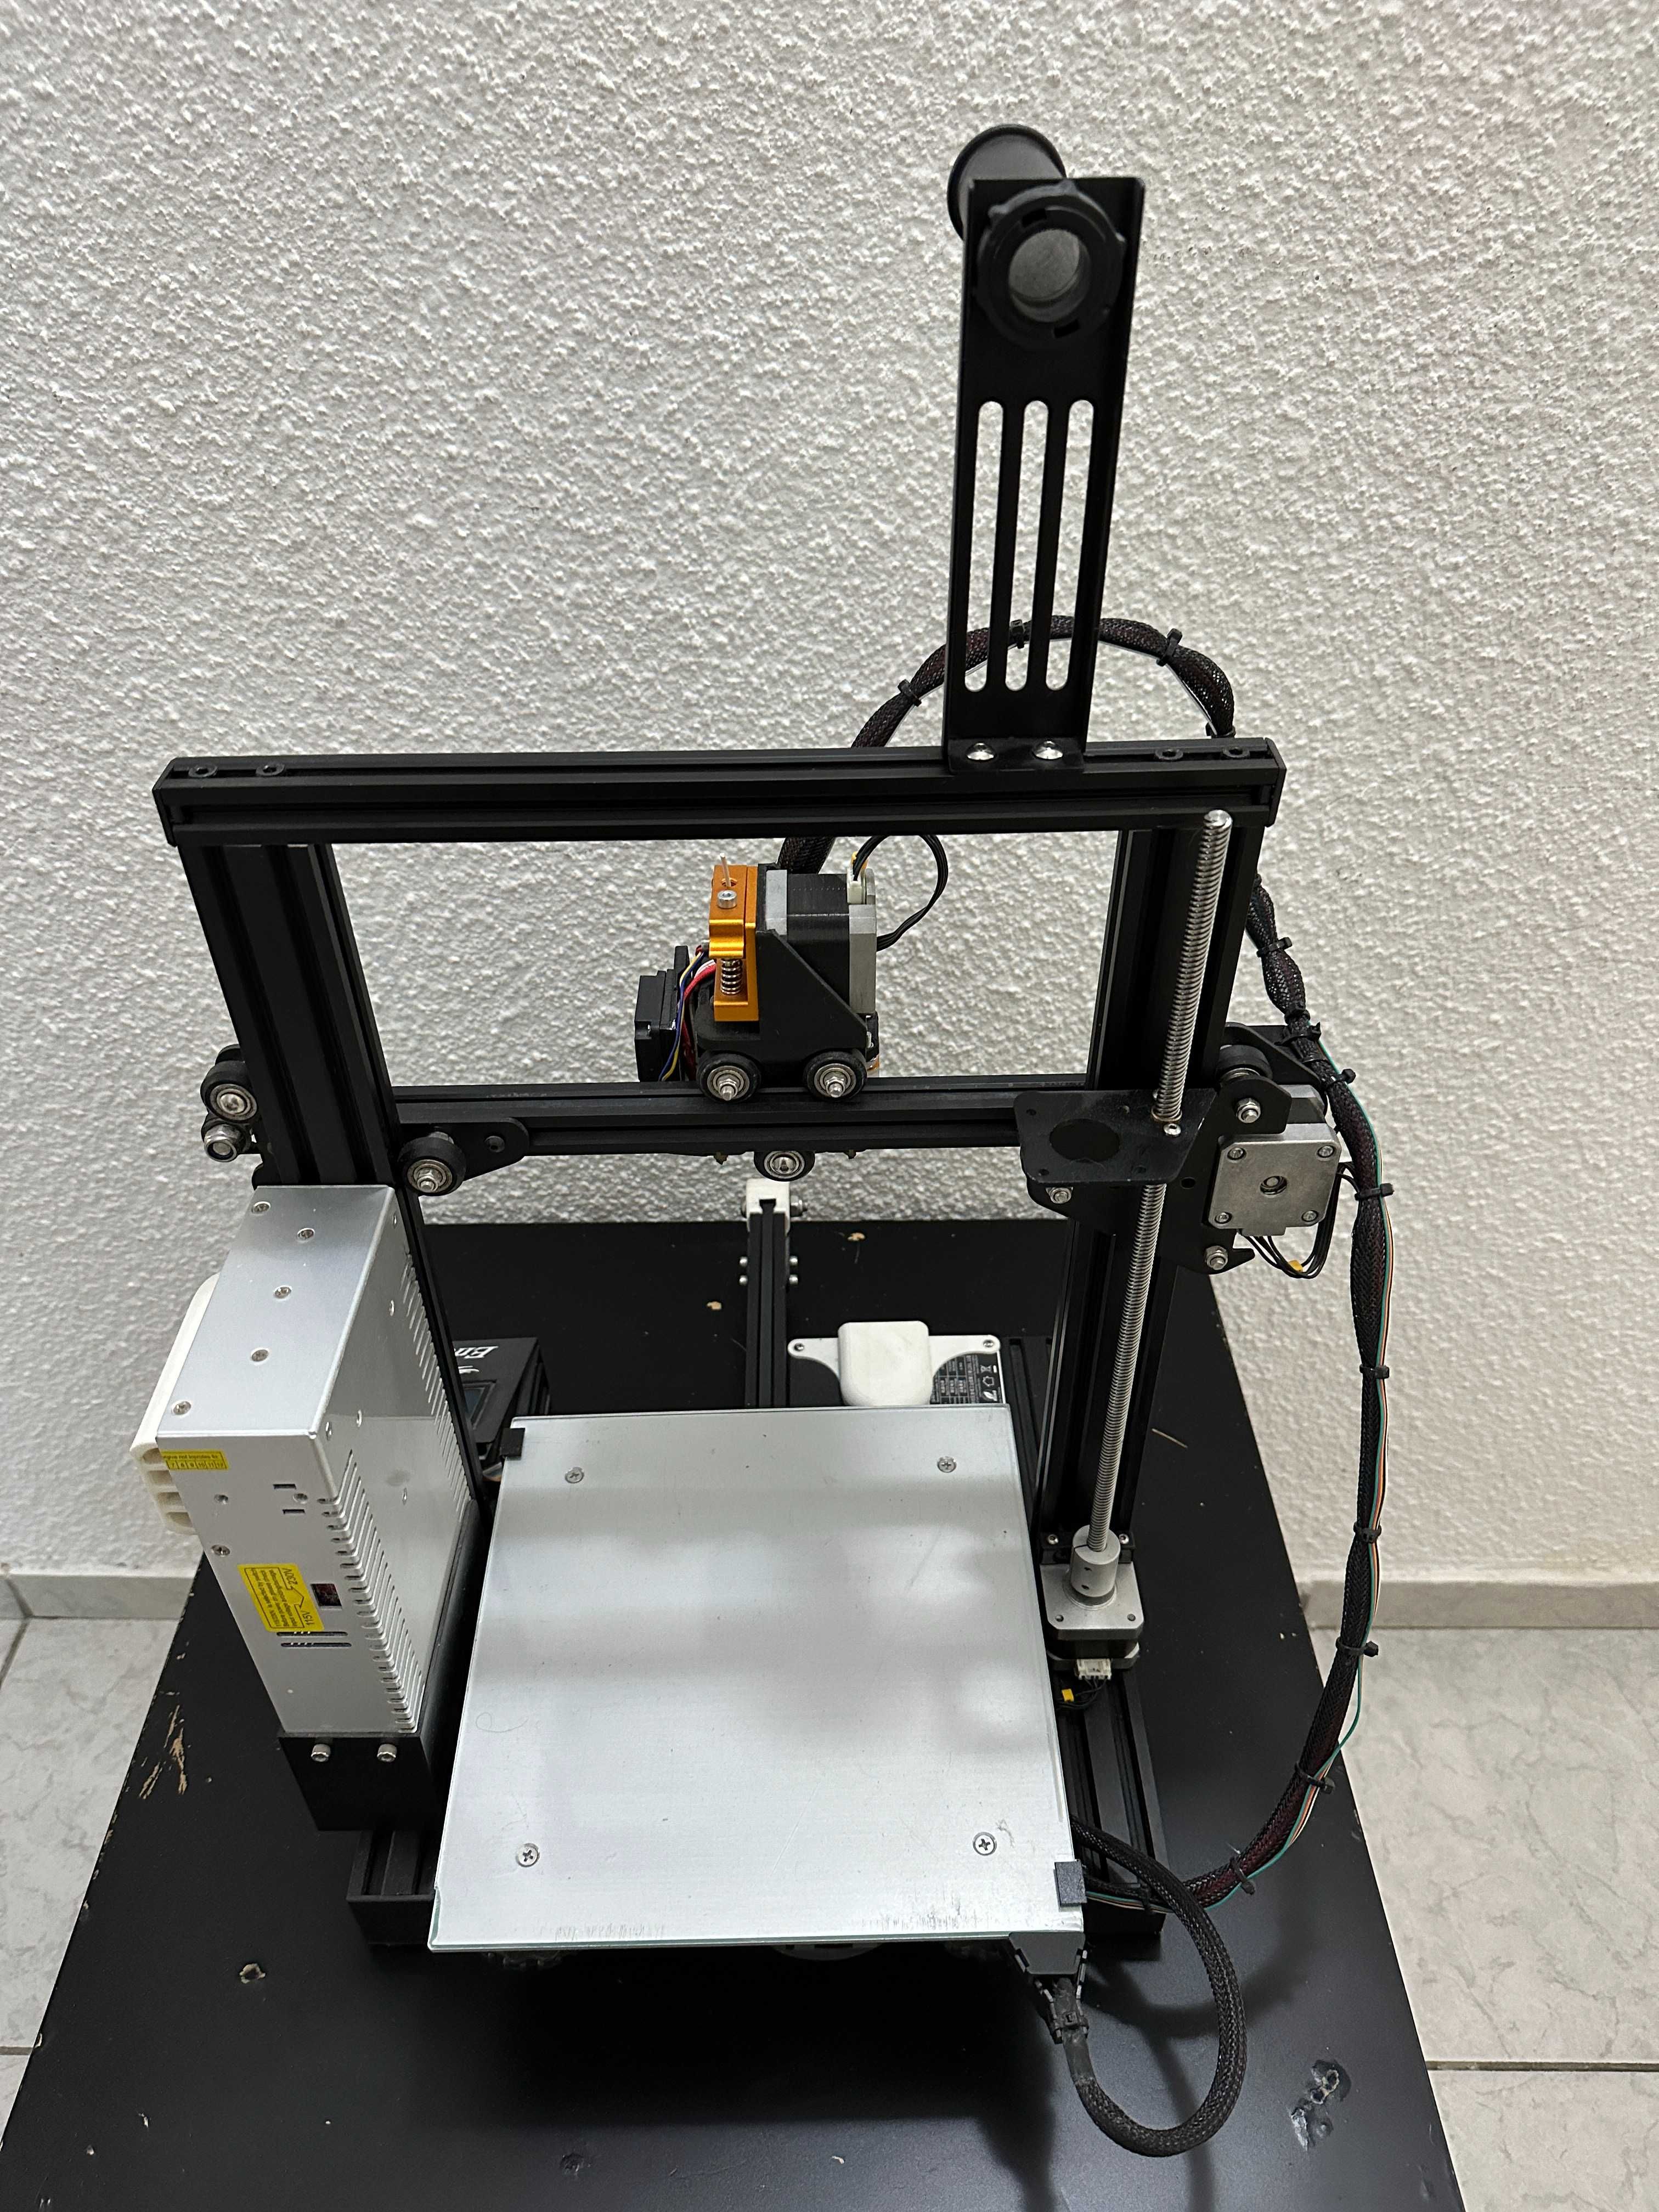 Imprimanta 3D Ender + Upgrade-uri